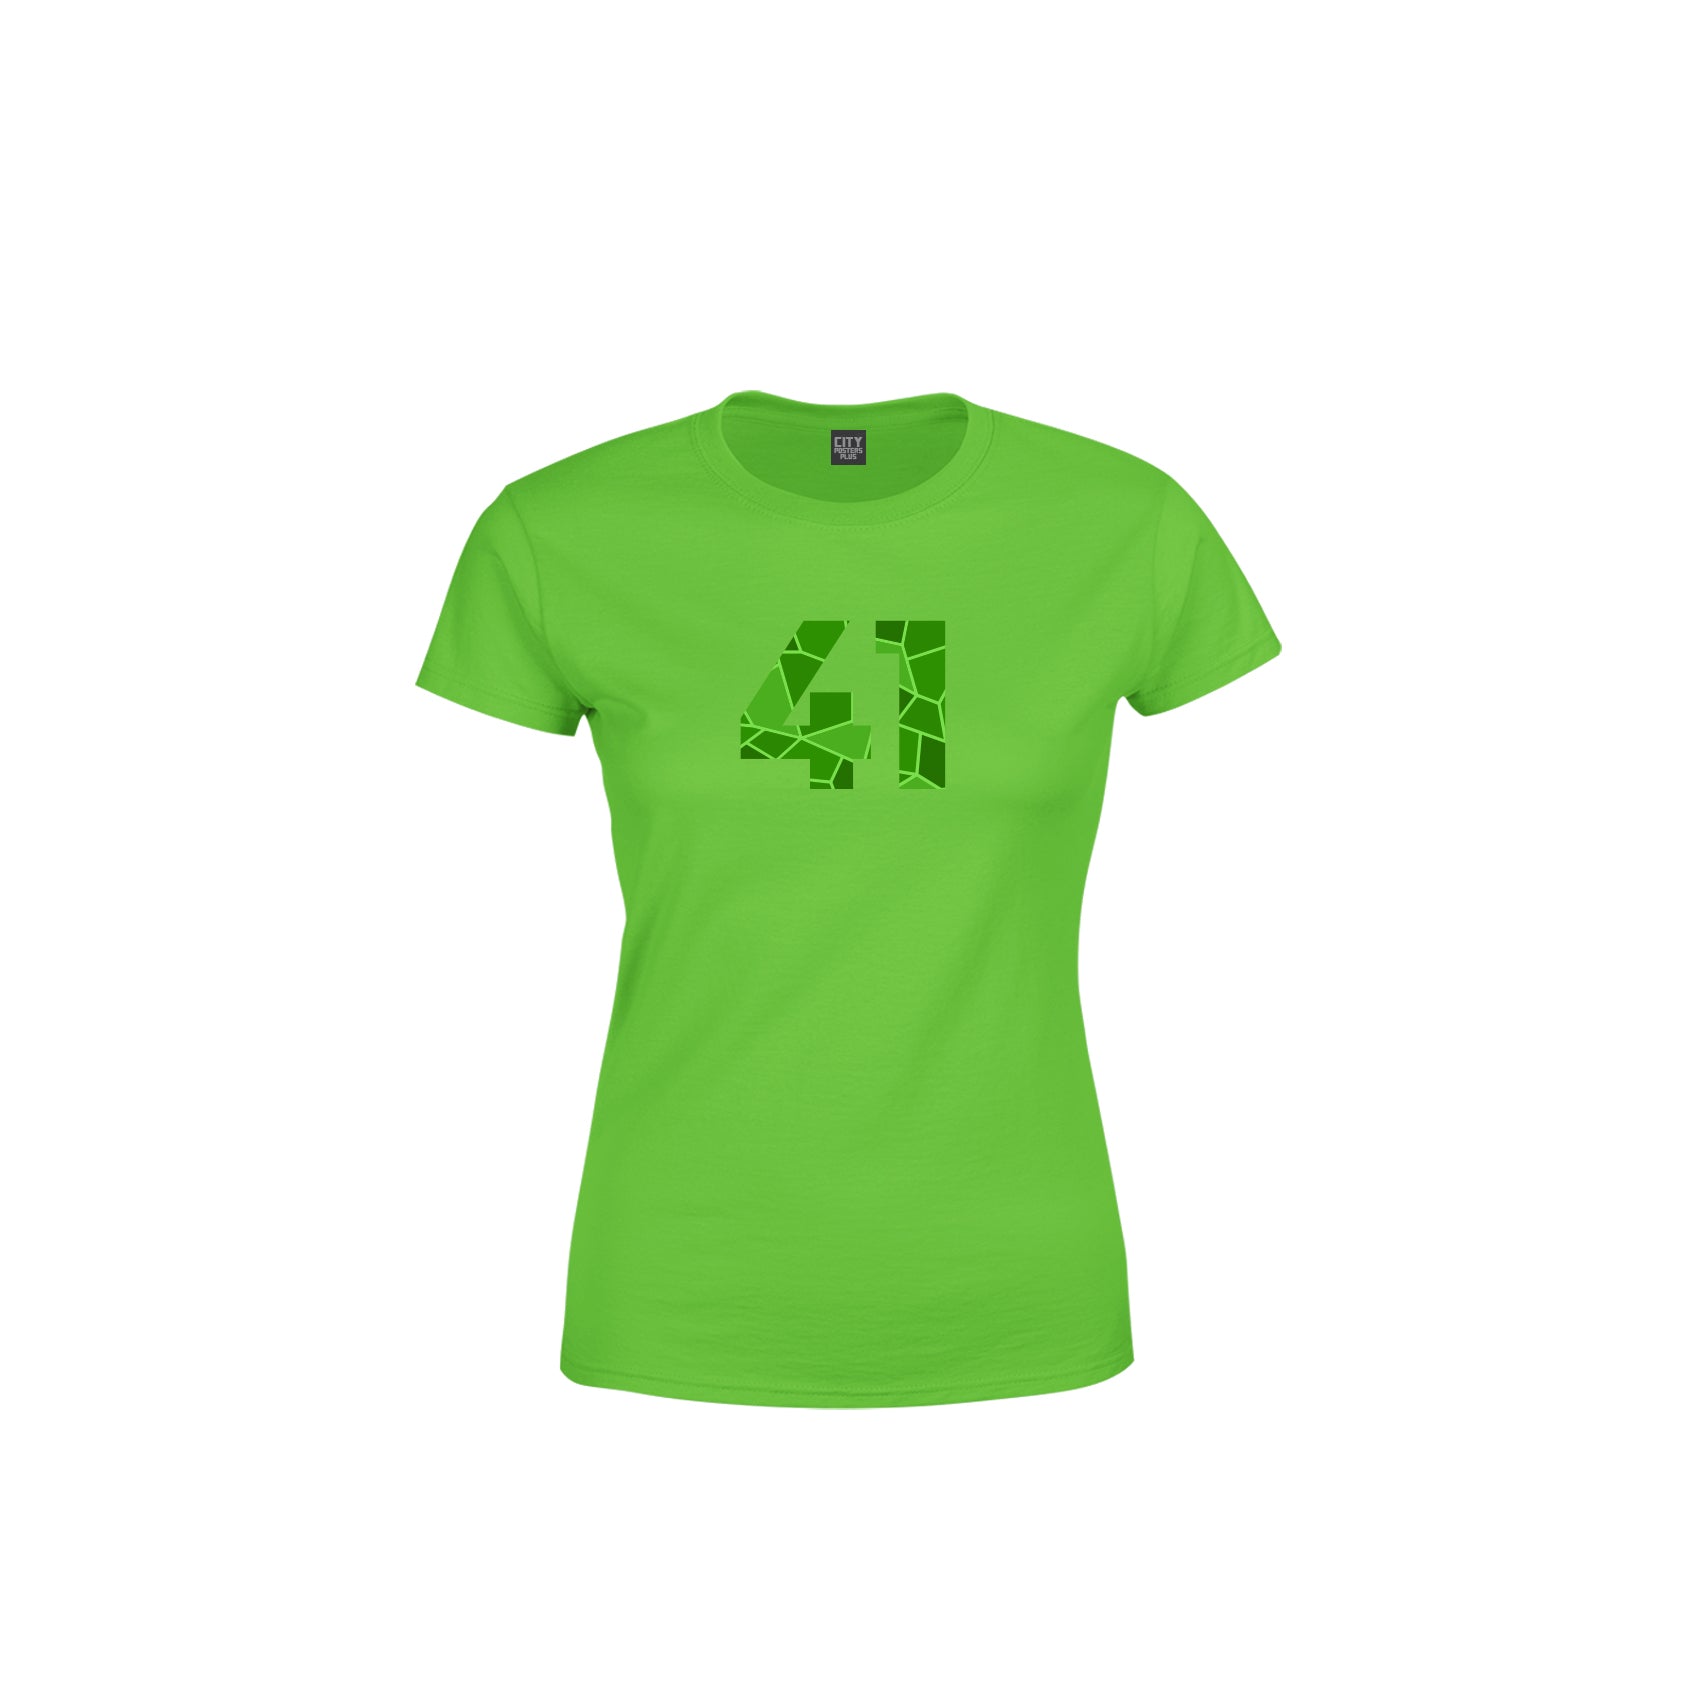 41 Number Women's T-Shirt (Liril Green)